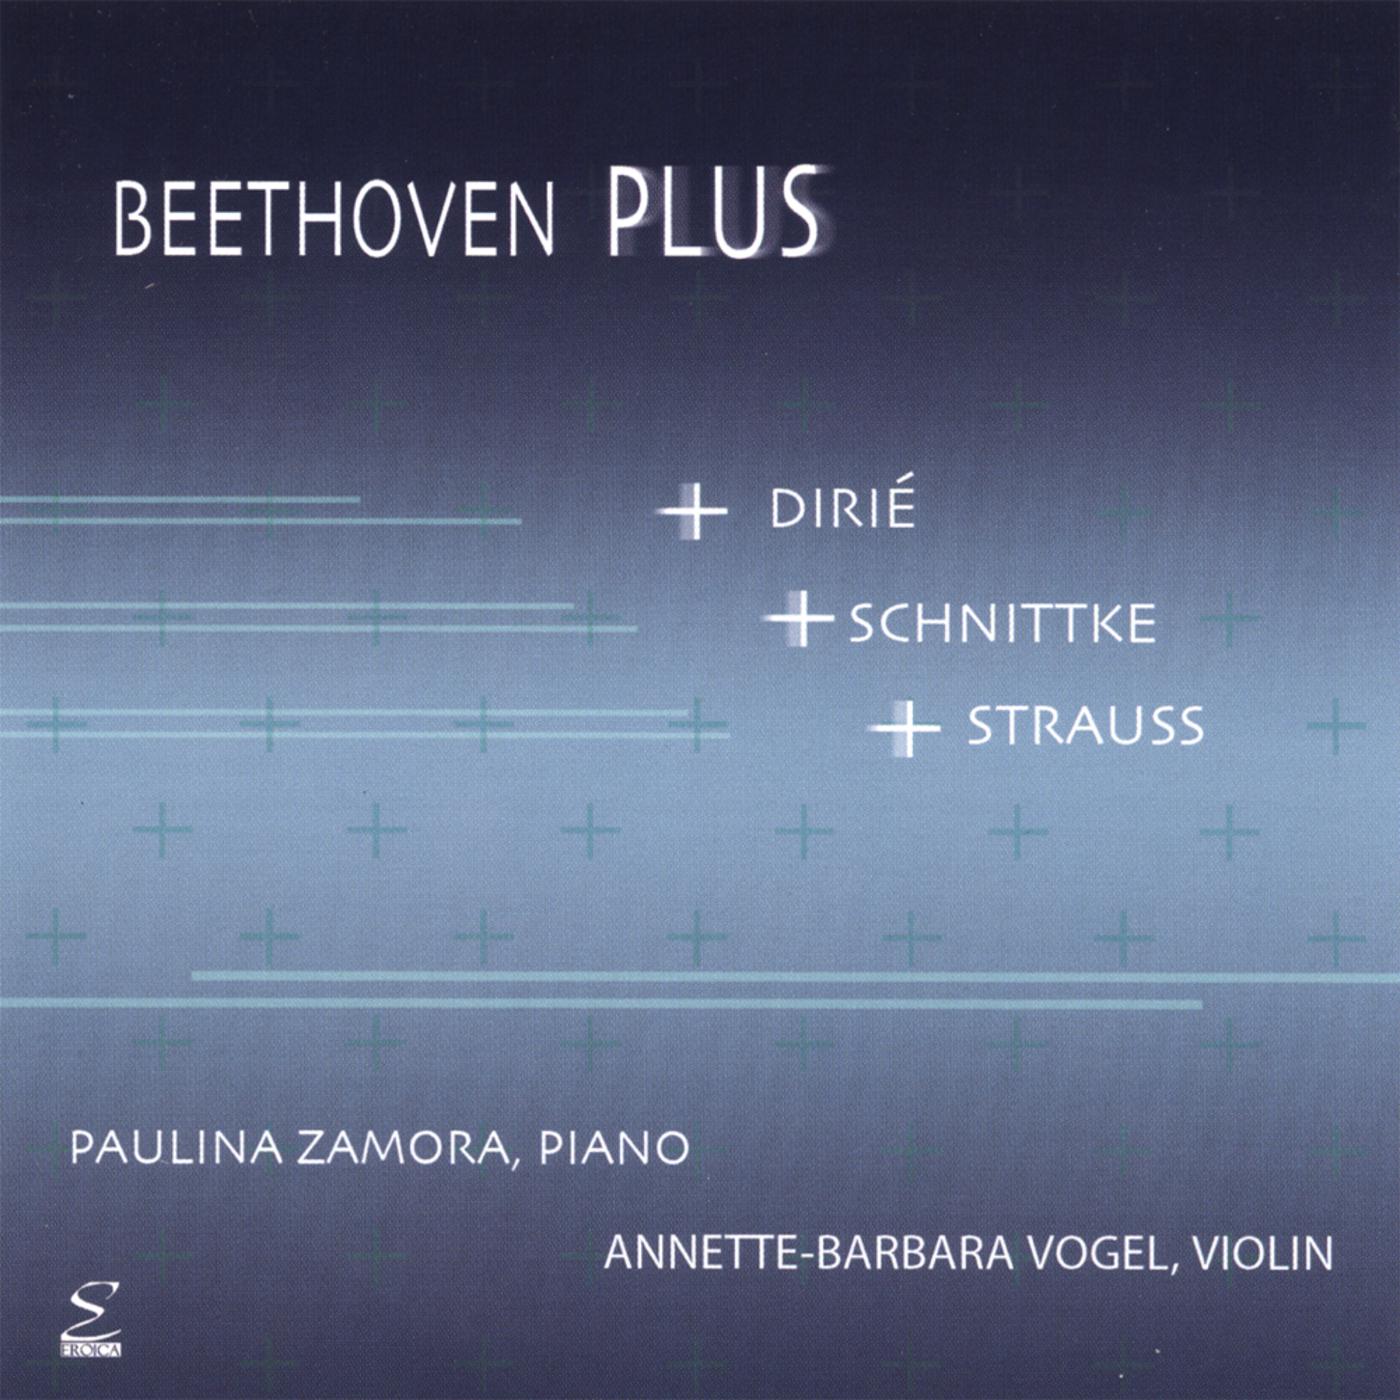 Beethoven Plus